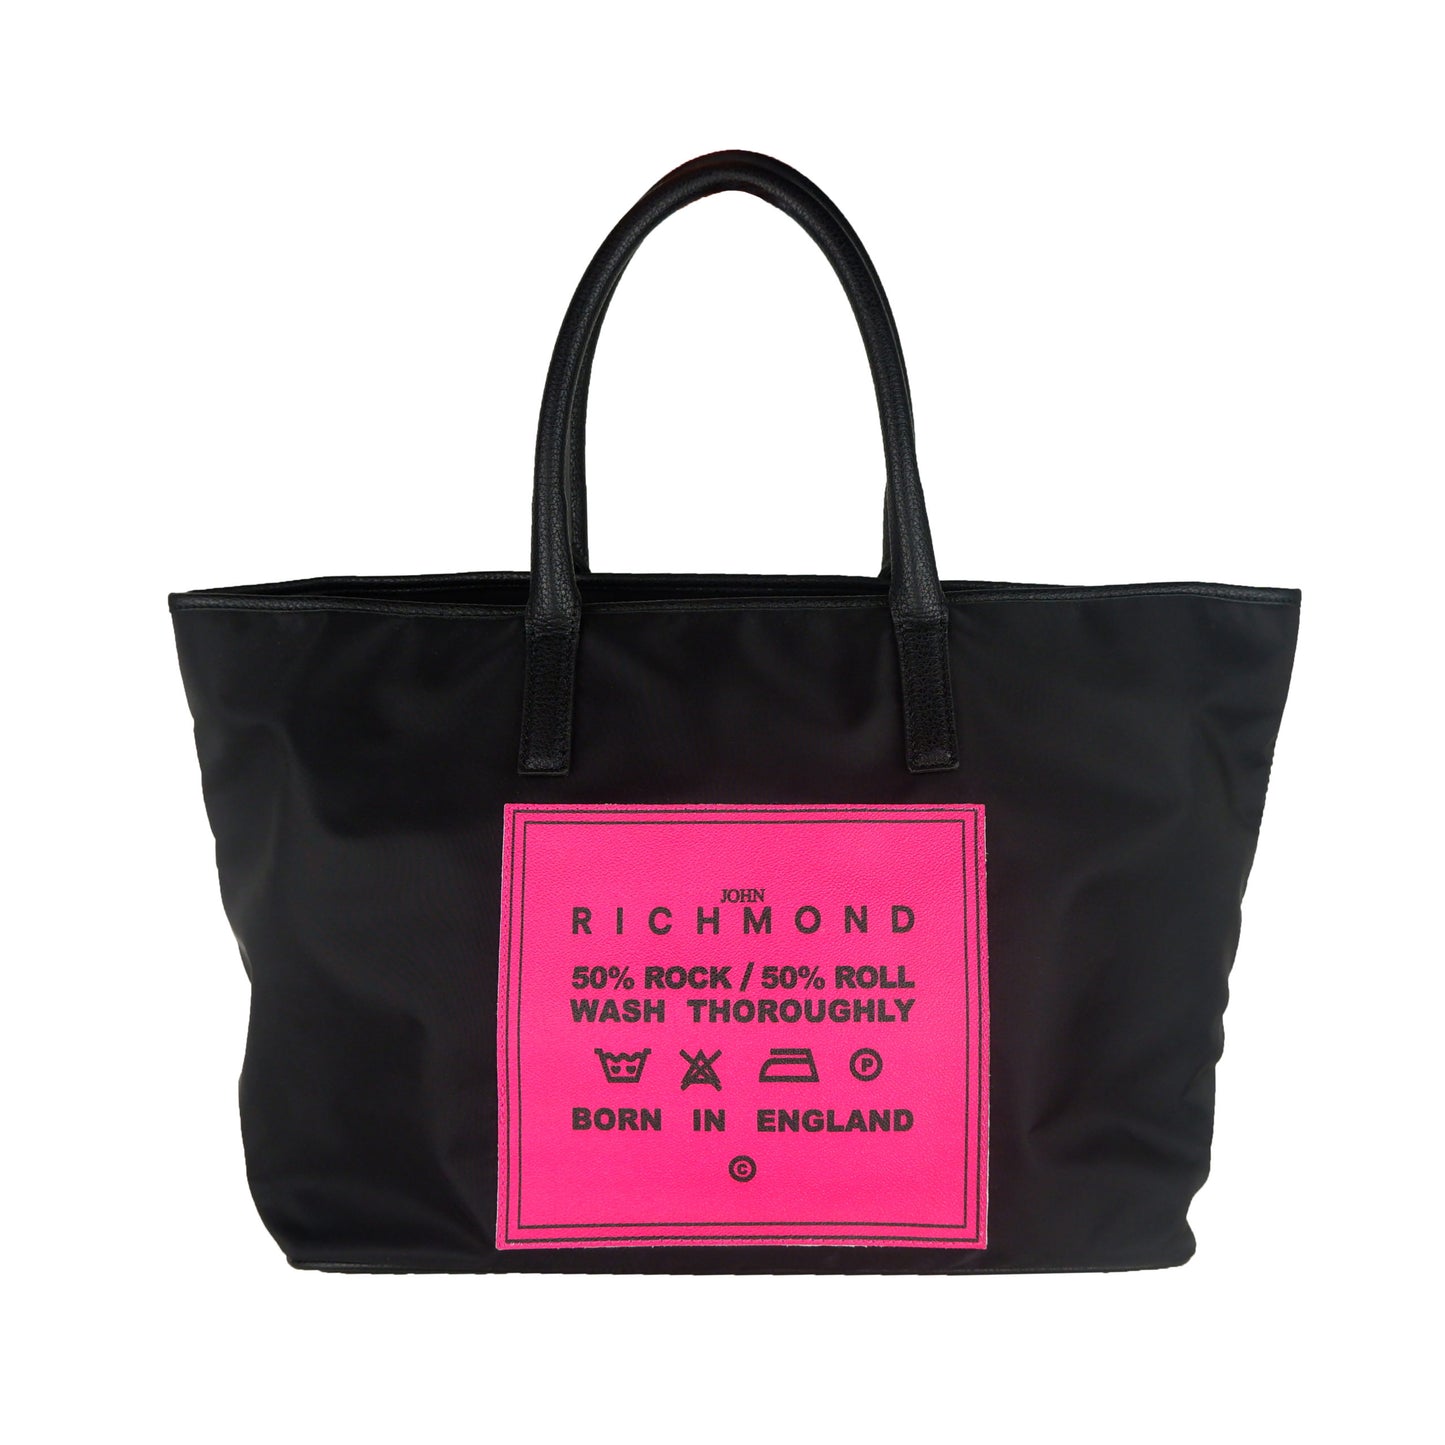 Black Leather & Polyamide Shopping Shoulder Bag